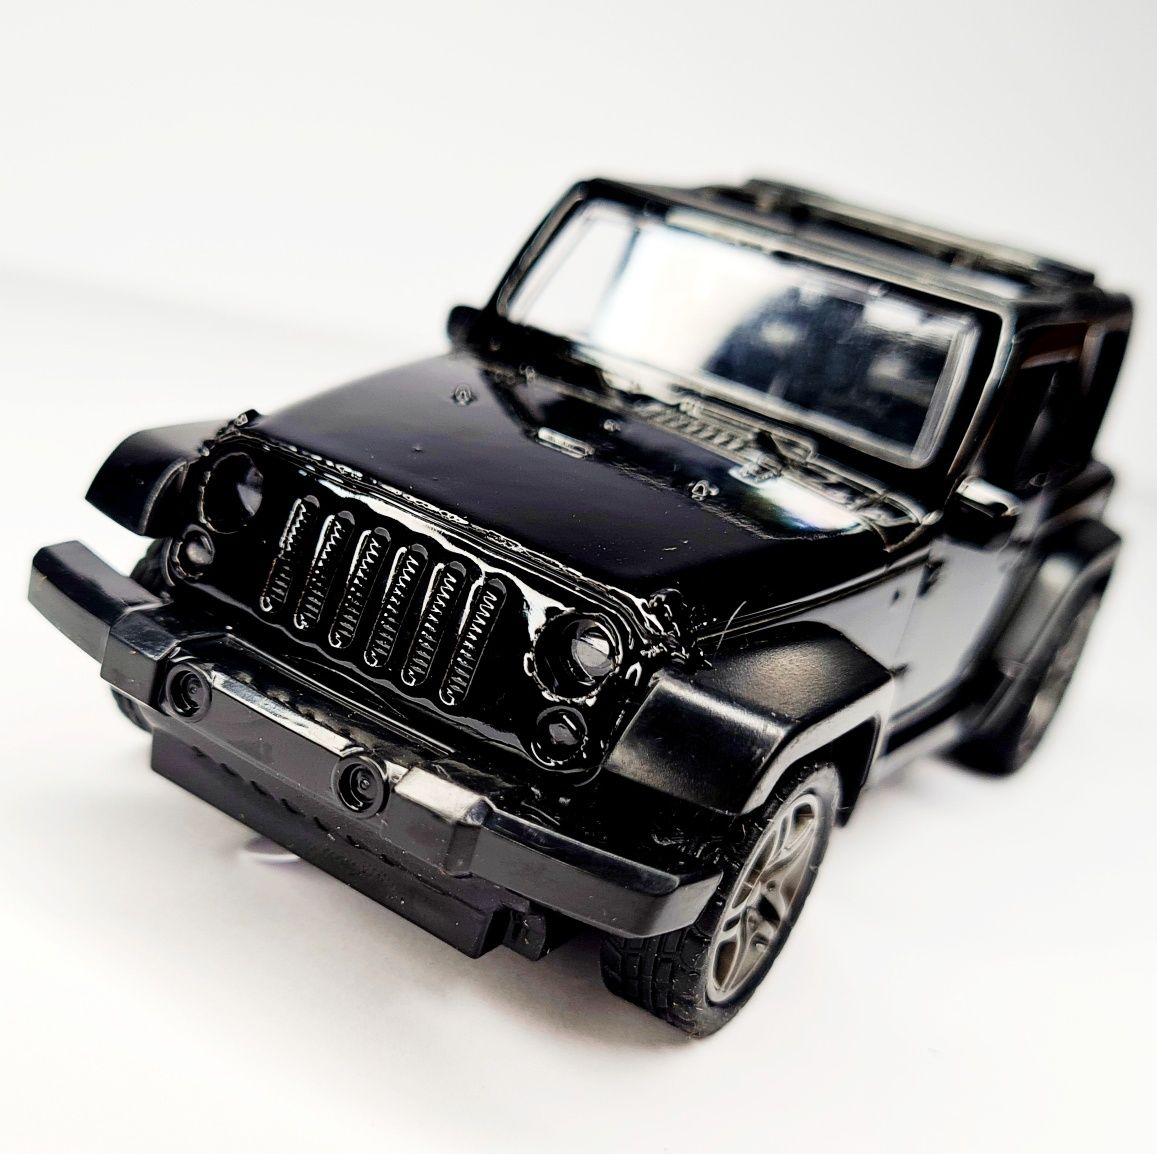 Nowe super autko terenowe samochodzik Jeep czarny - zabawki